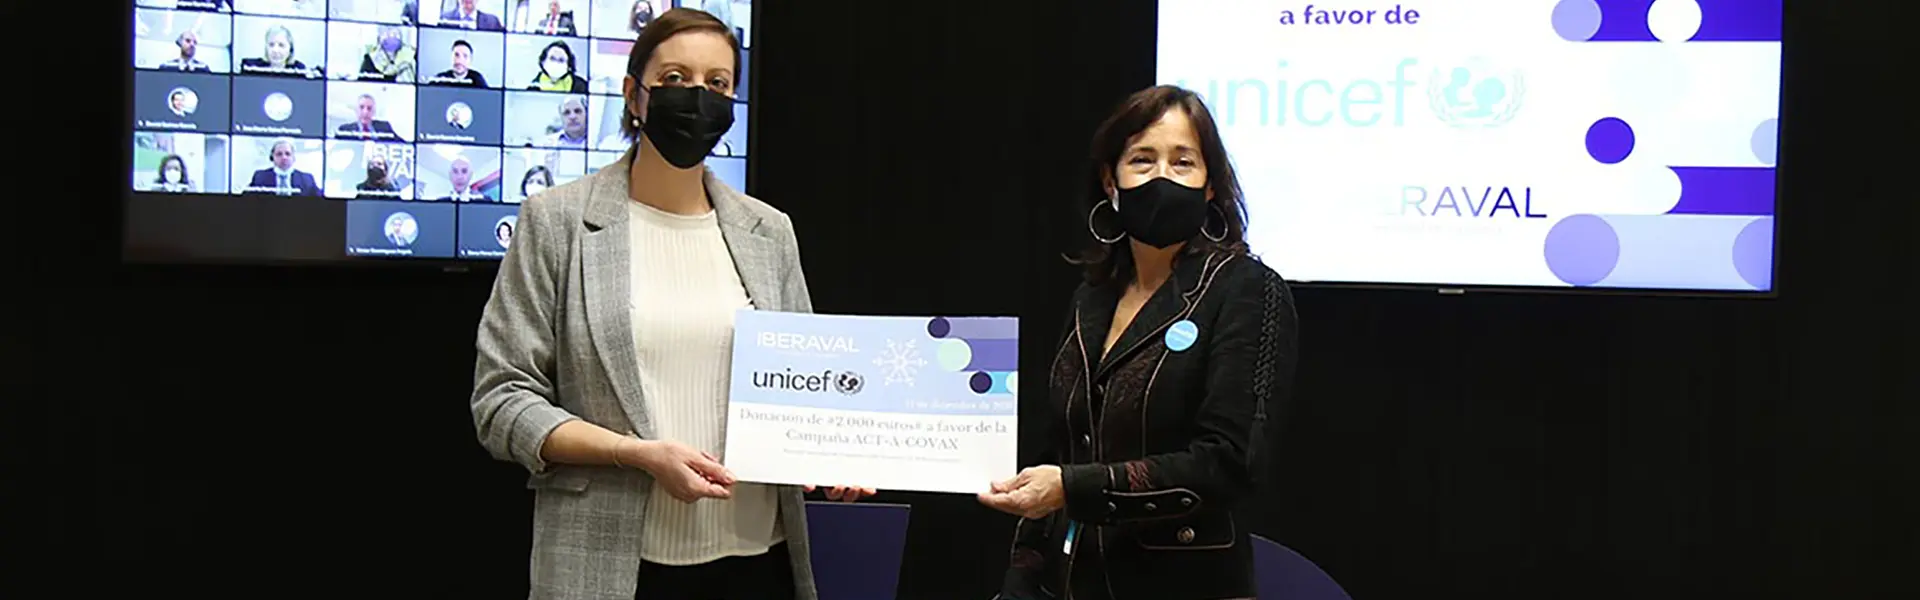 Iberaval se alía con Unicef para apoyar la mayor operación de vacunación de la historia ultimas noticias Cesgar web copia